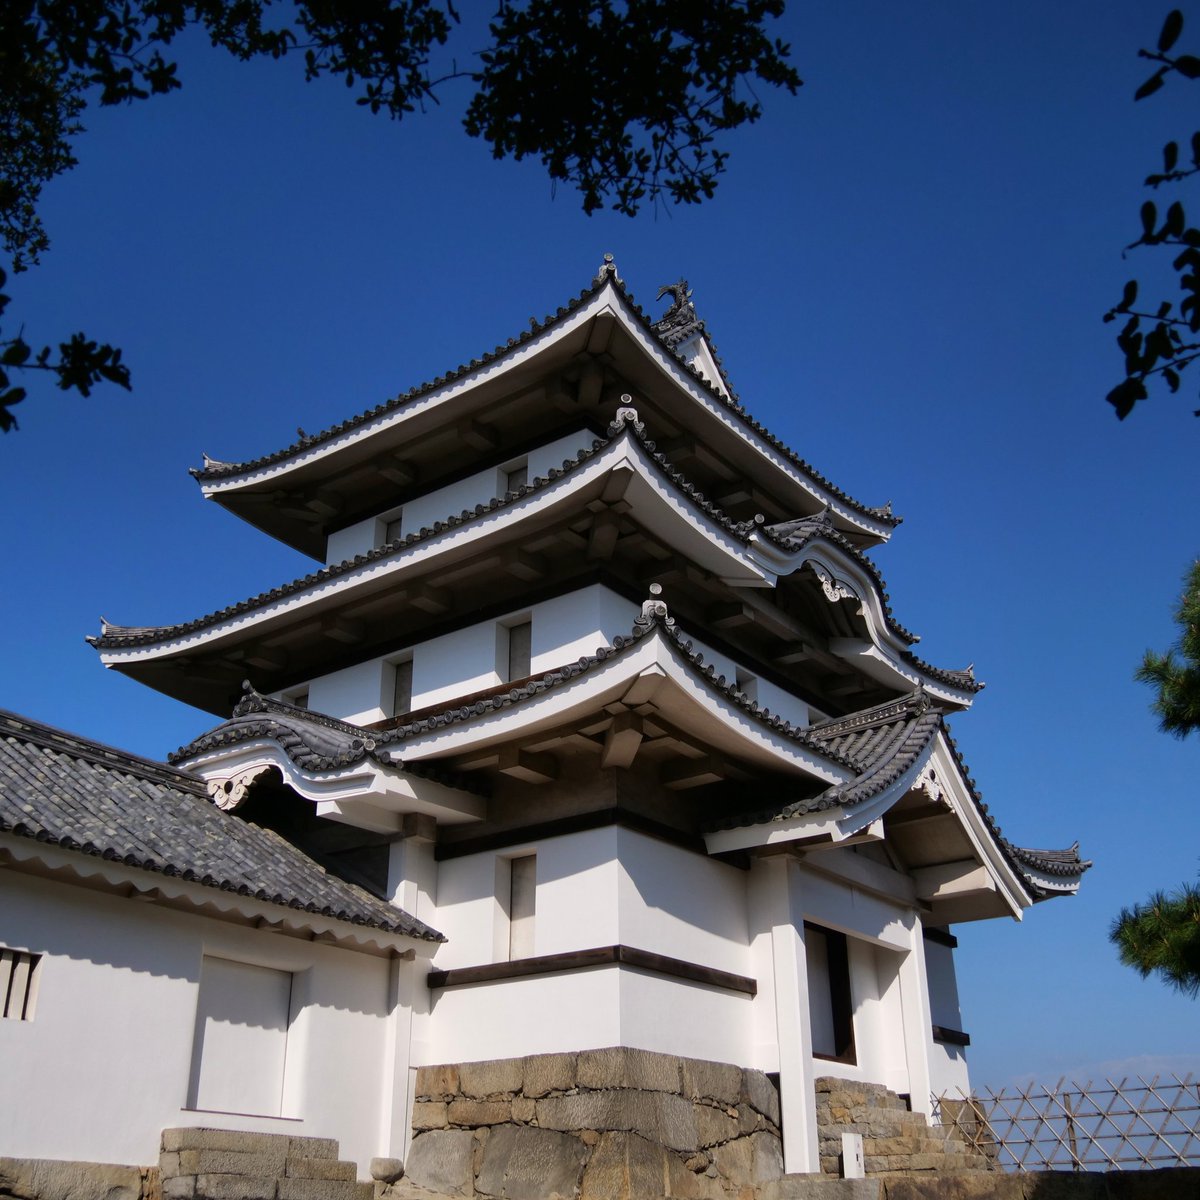 Visite du #parc des #ruines du #château de #Takamatsu

#LumixG9 #laowa7_5mm

instagram.com/p/Cz2yhcQLEFm/